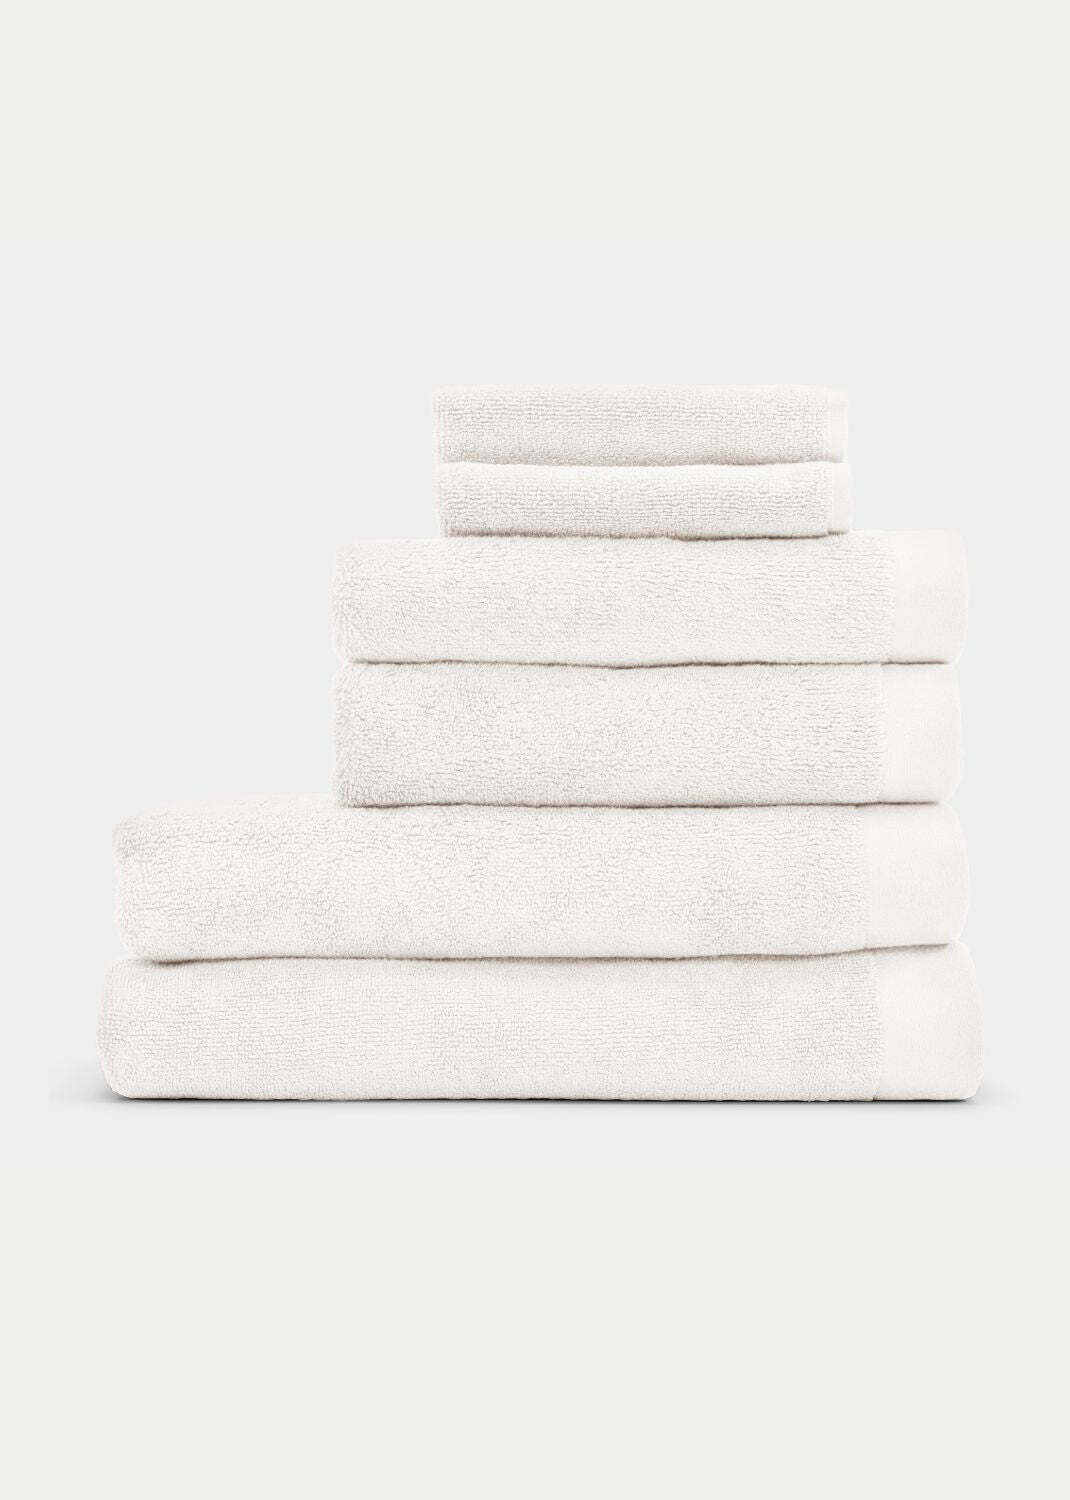 Handtuch Baumwolle Weiß 30 x 30 cm 0